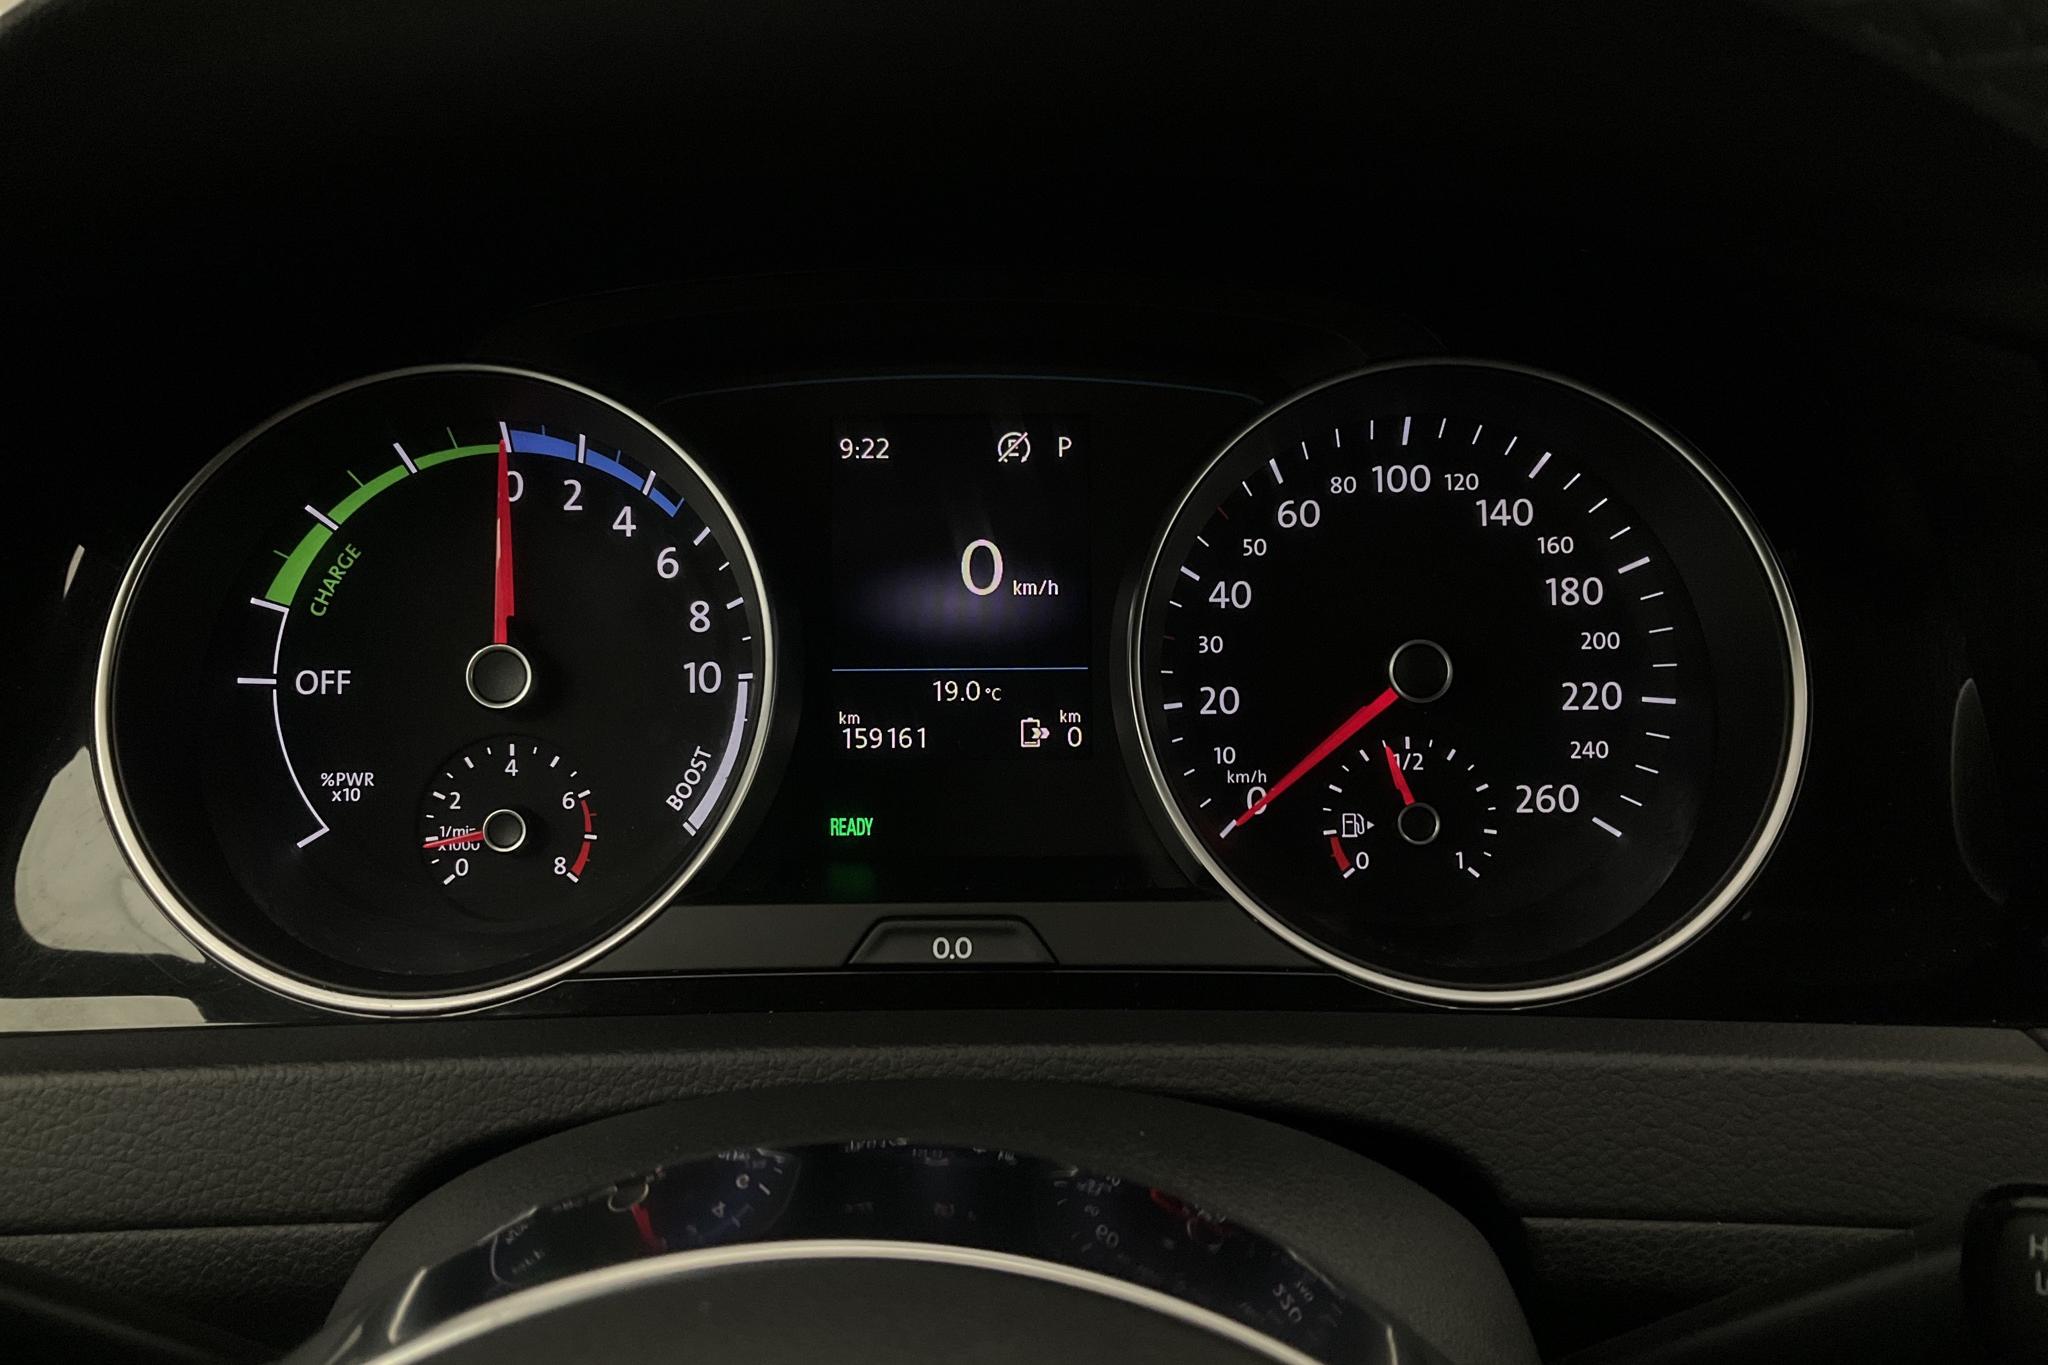 VW Golf VII GTE 5dr (204hk) - 15 916 mil - Automat - vit - 2019